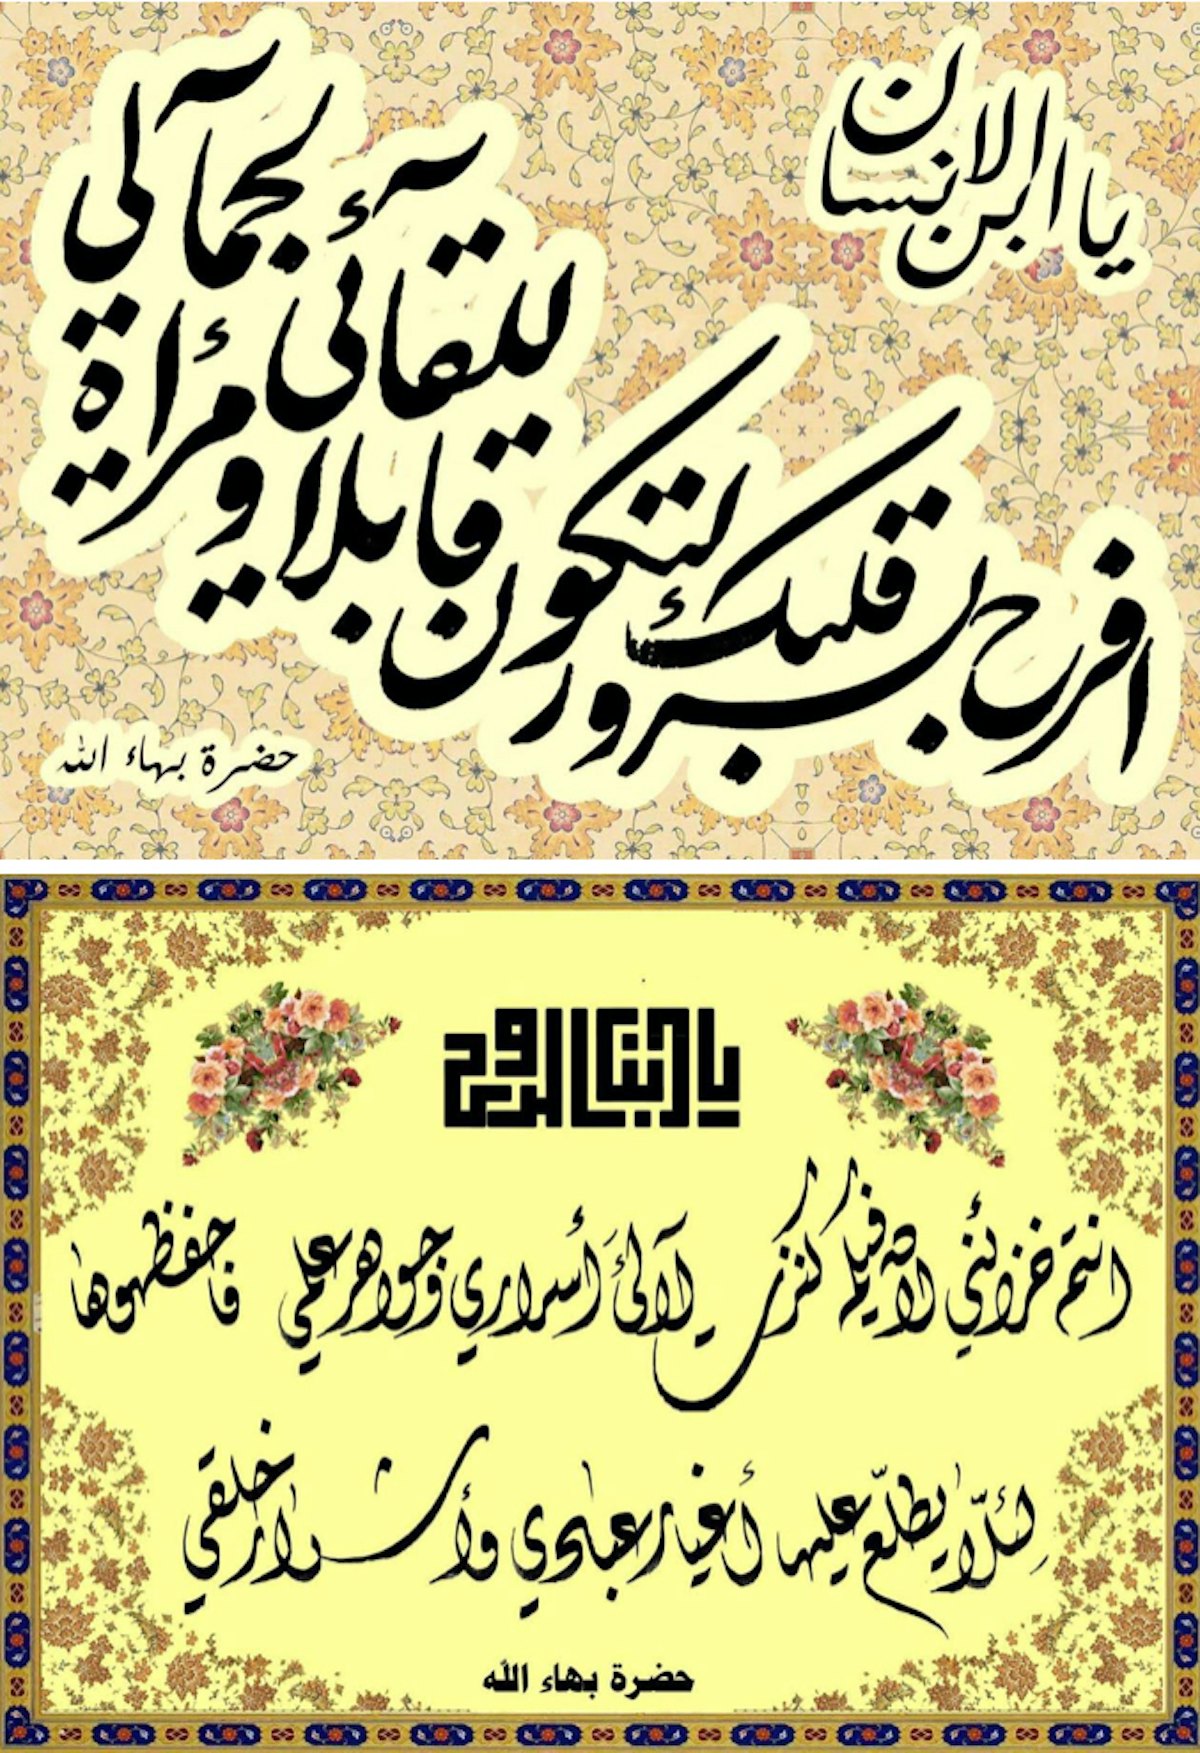 Un artiste en Irak a créé ces calligraphies enluminées d’extraits des « Paroles cachées » de Bahá’u’lláh.